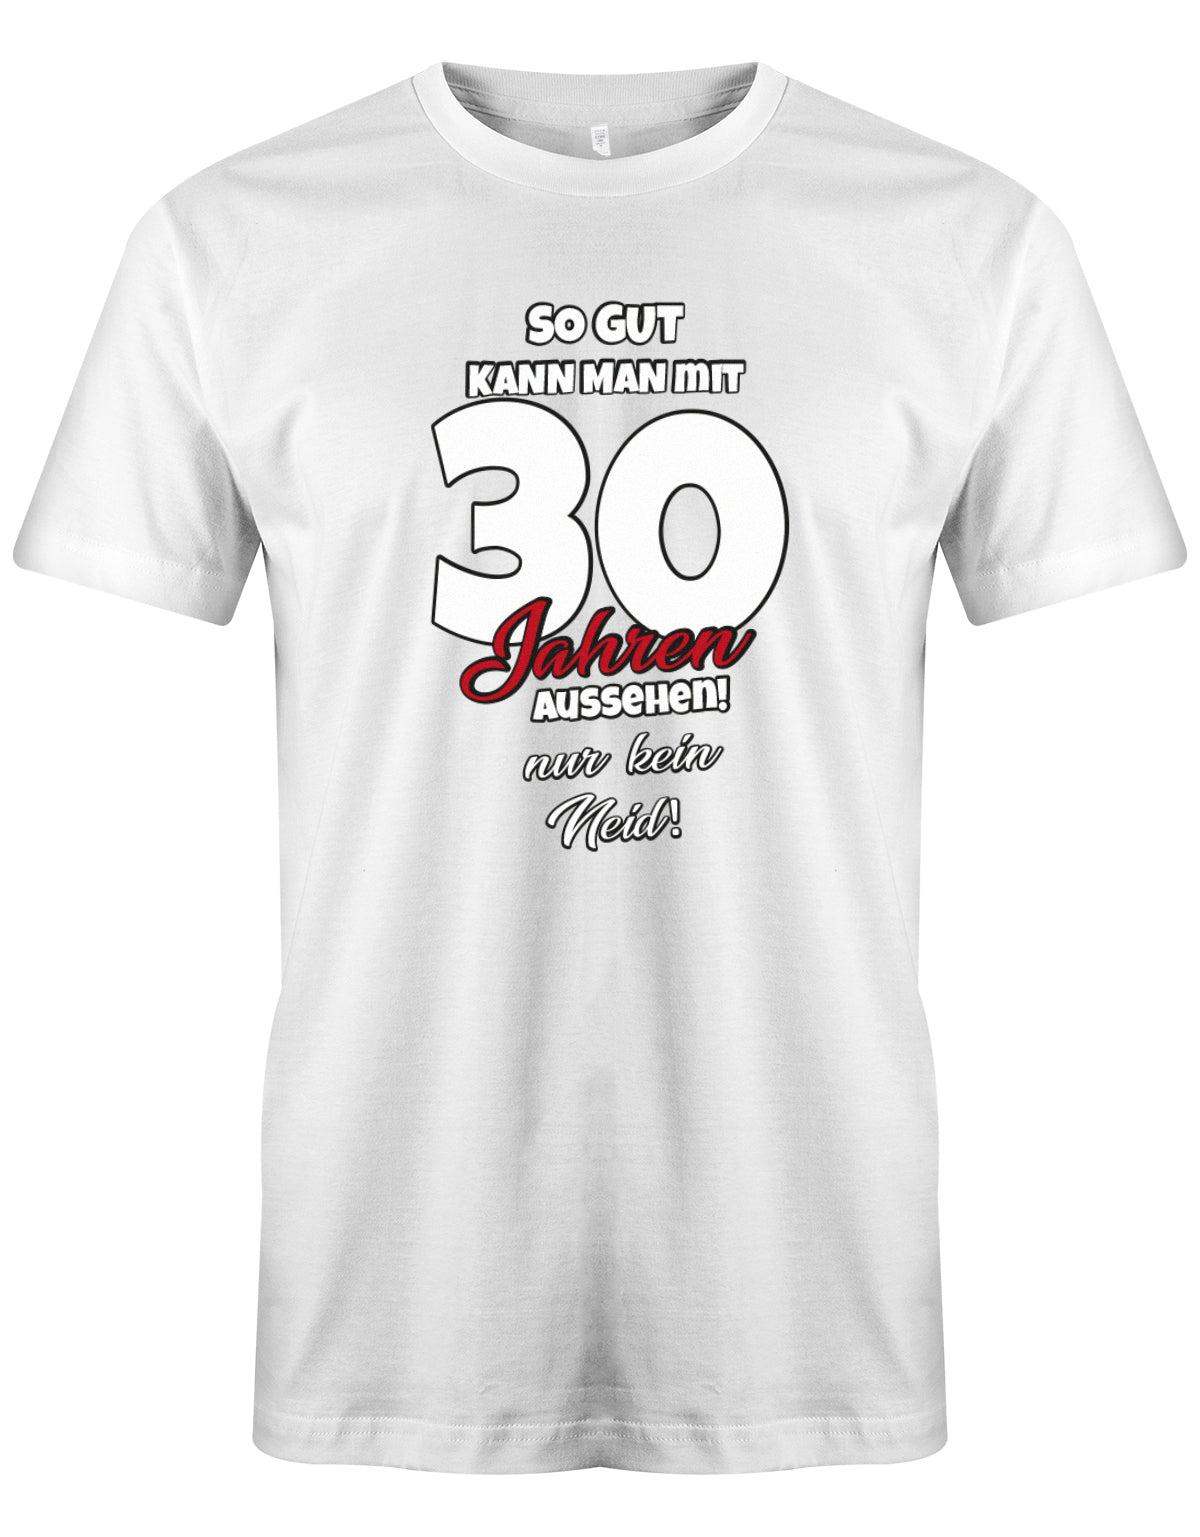 Lustiges T-Shirt zum 30 Geburtstag für den Mann Bedruckt mit So gut kann man mit 30 Jahren aussehen! Nur kein Neid Weiss